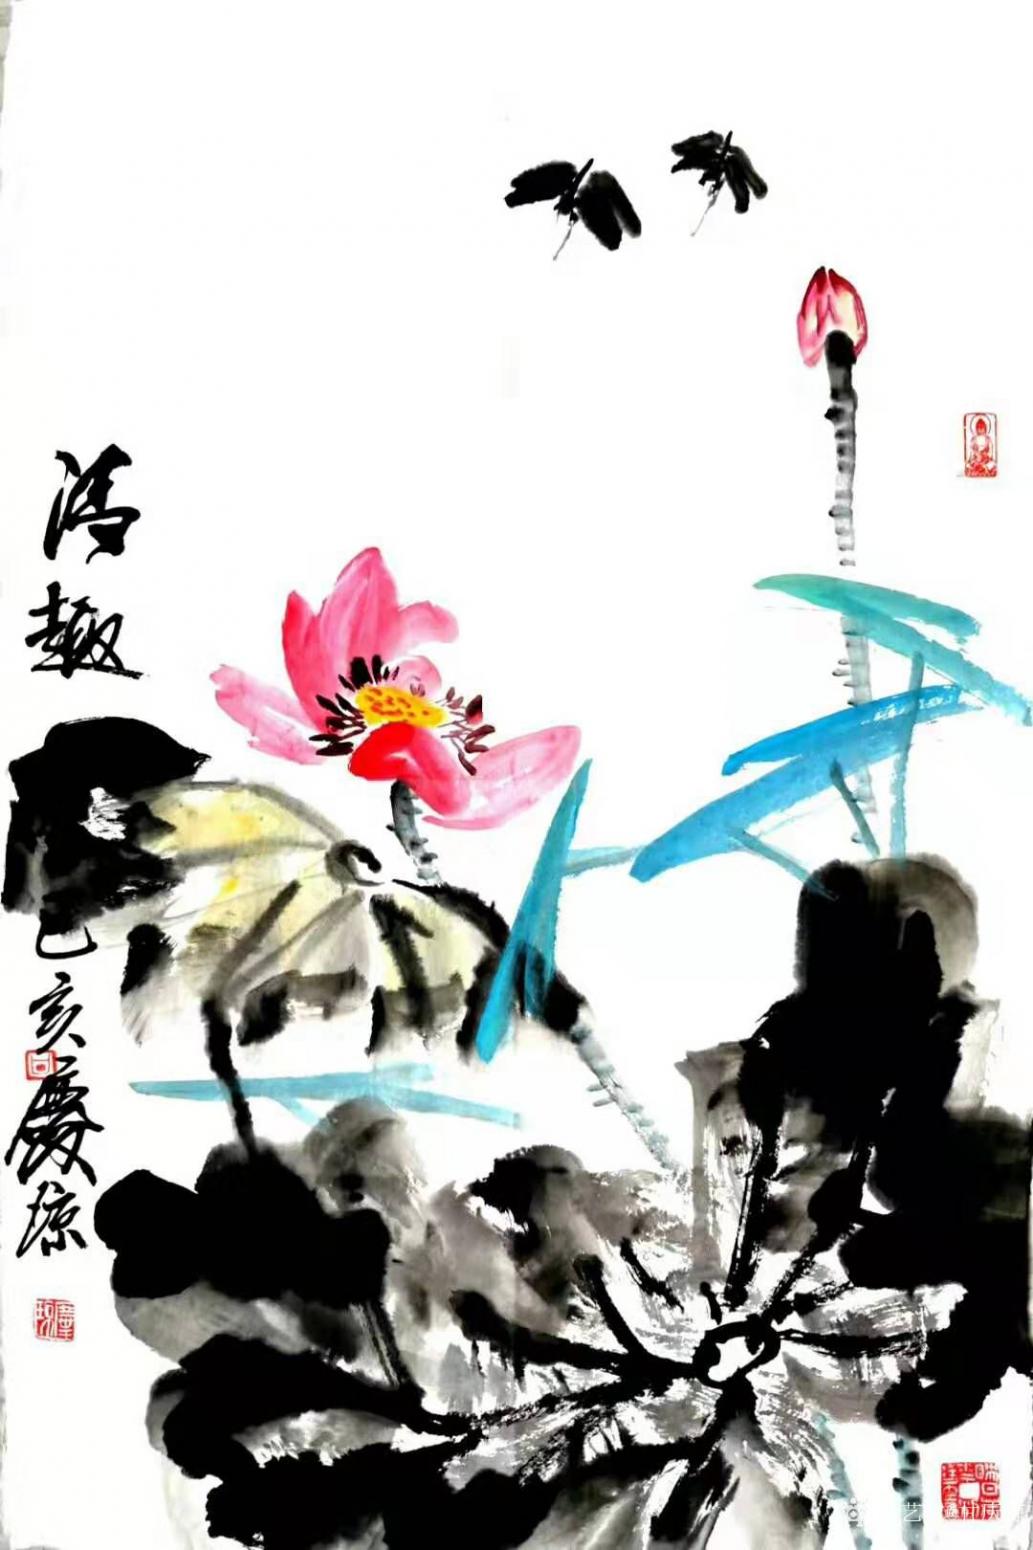 甘庆琼国画作品《写意荷花蜻蜓》